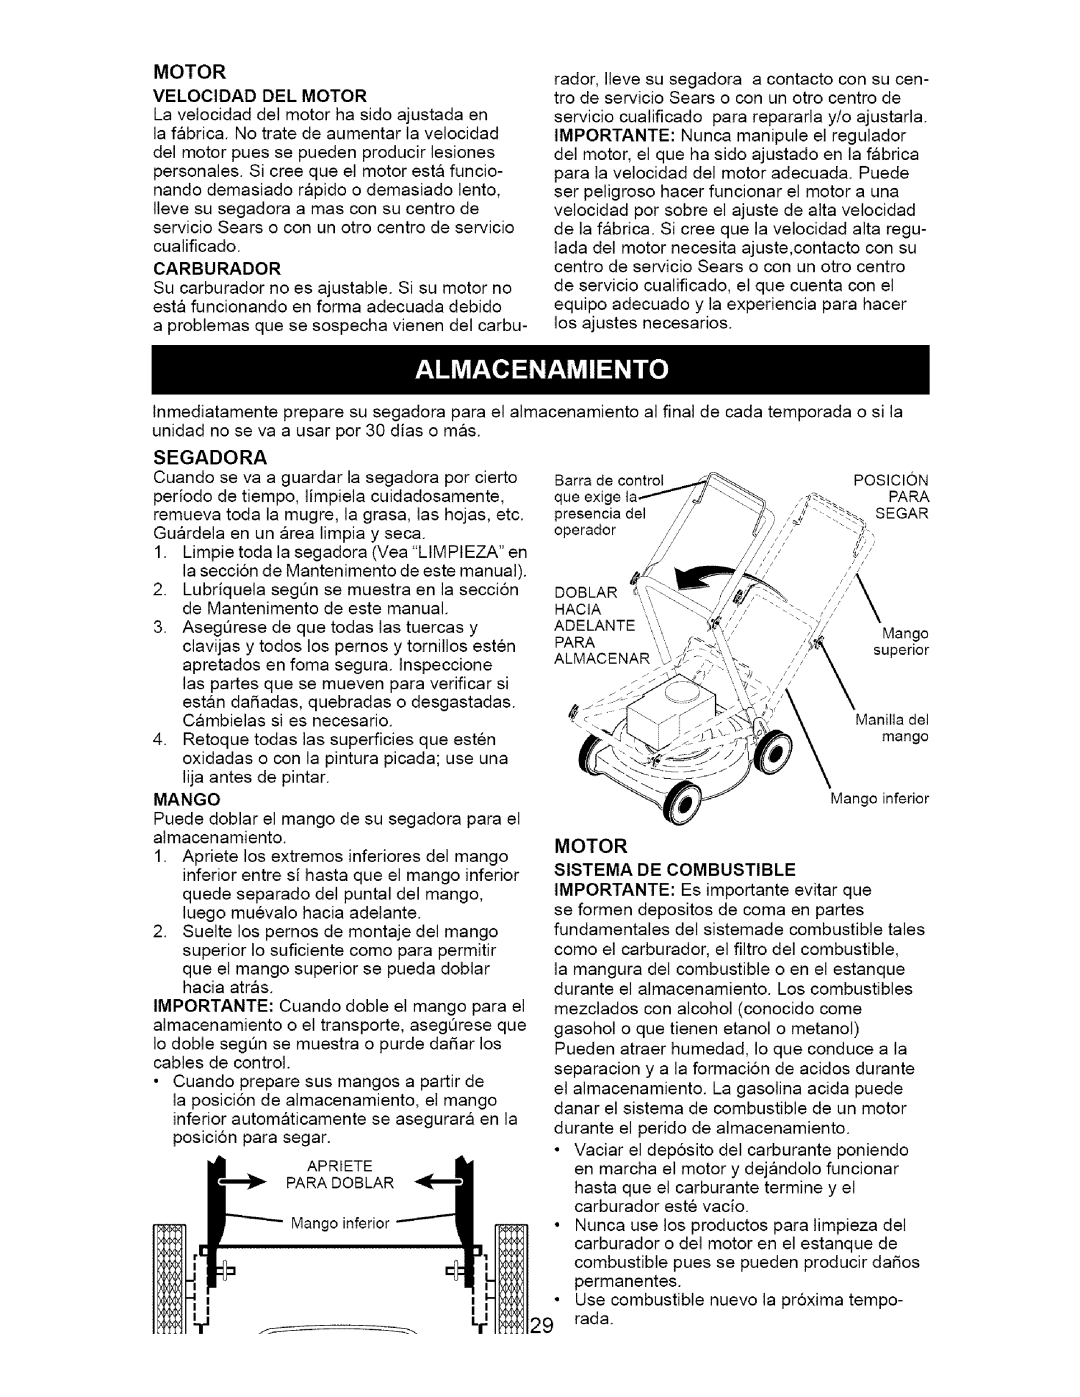 Craftsman 917.385122 manual Mango, Motor Sistema De Combustible, IMPORTANTE: Es importante evitar que 